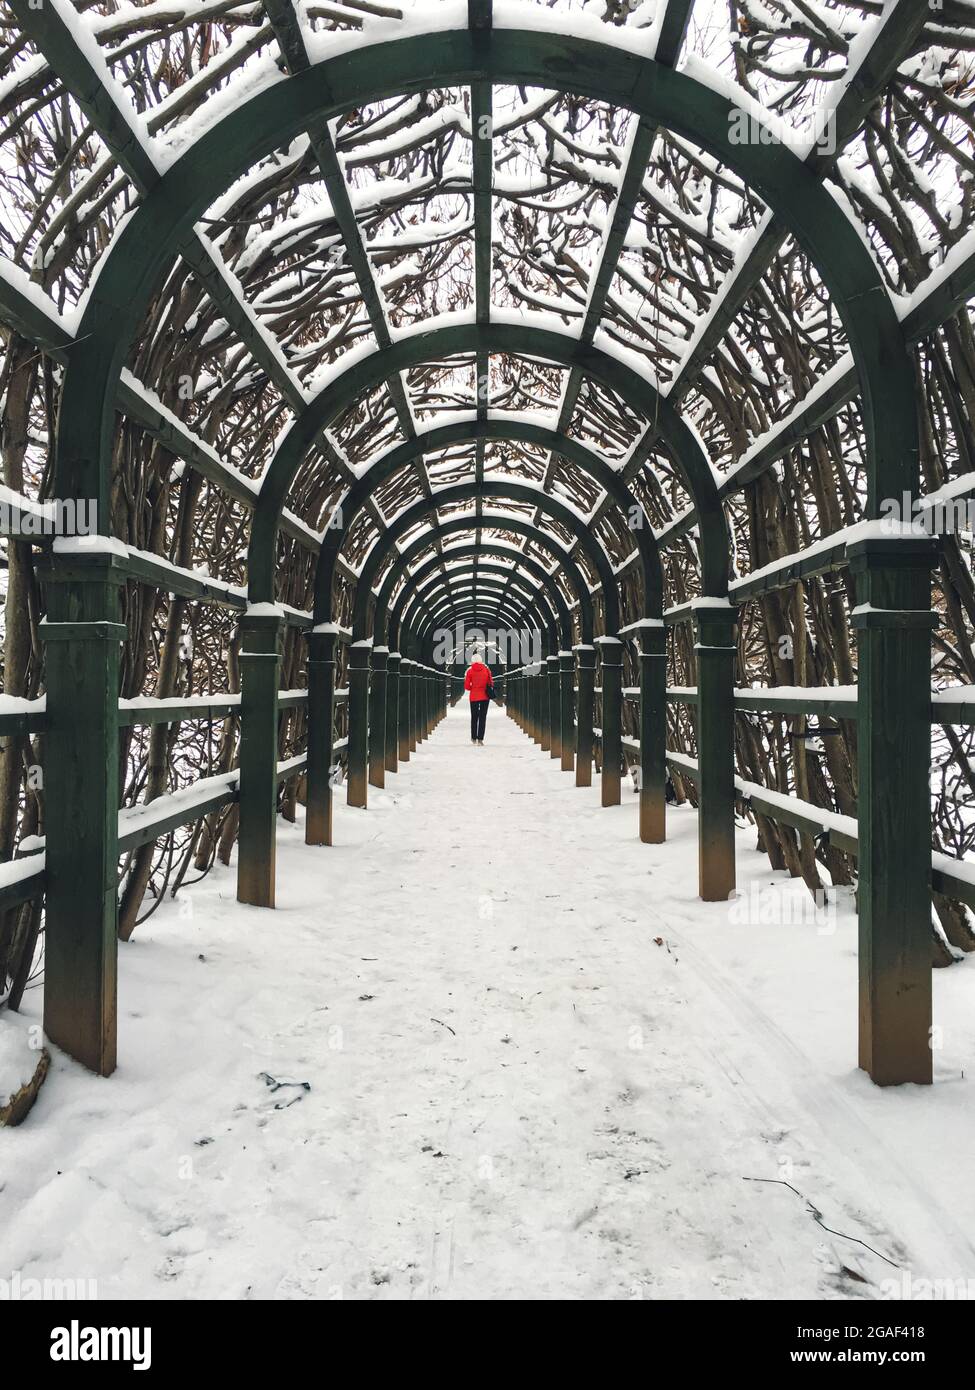 Personne dans le parc d'hiver avec arches et arbres en premier plan Banque D'Images